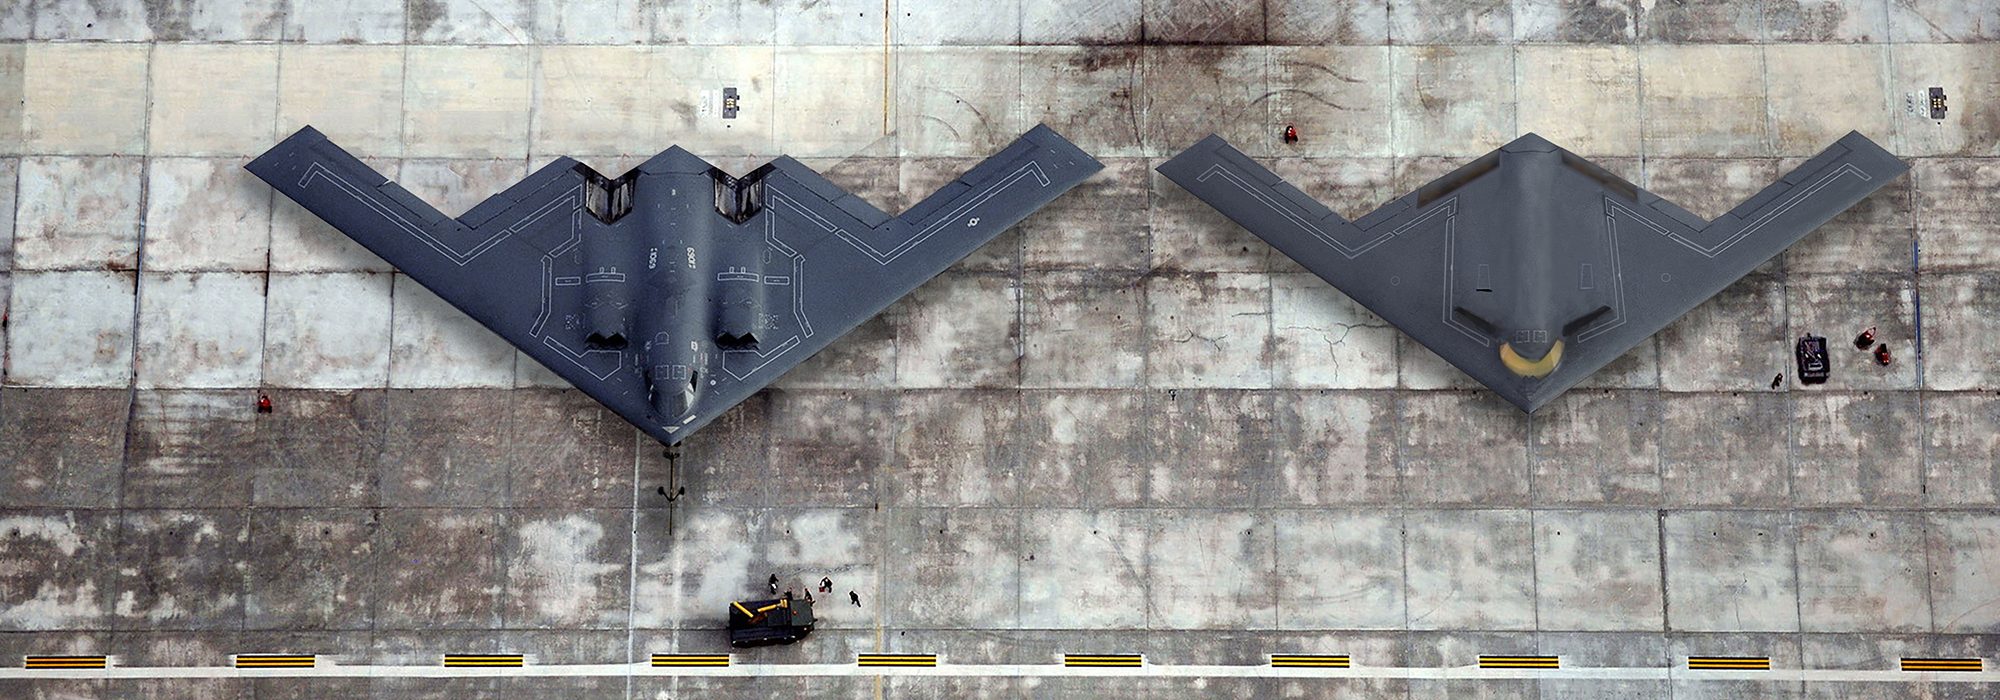 Primeiro B-21 Raider começa a tomar forma na fábrica da Northrop